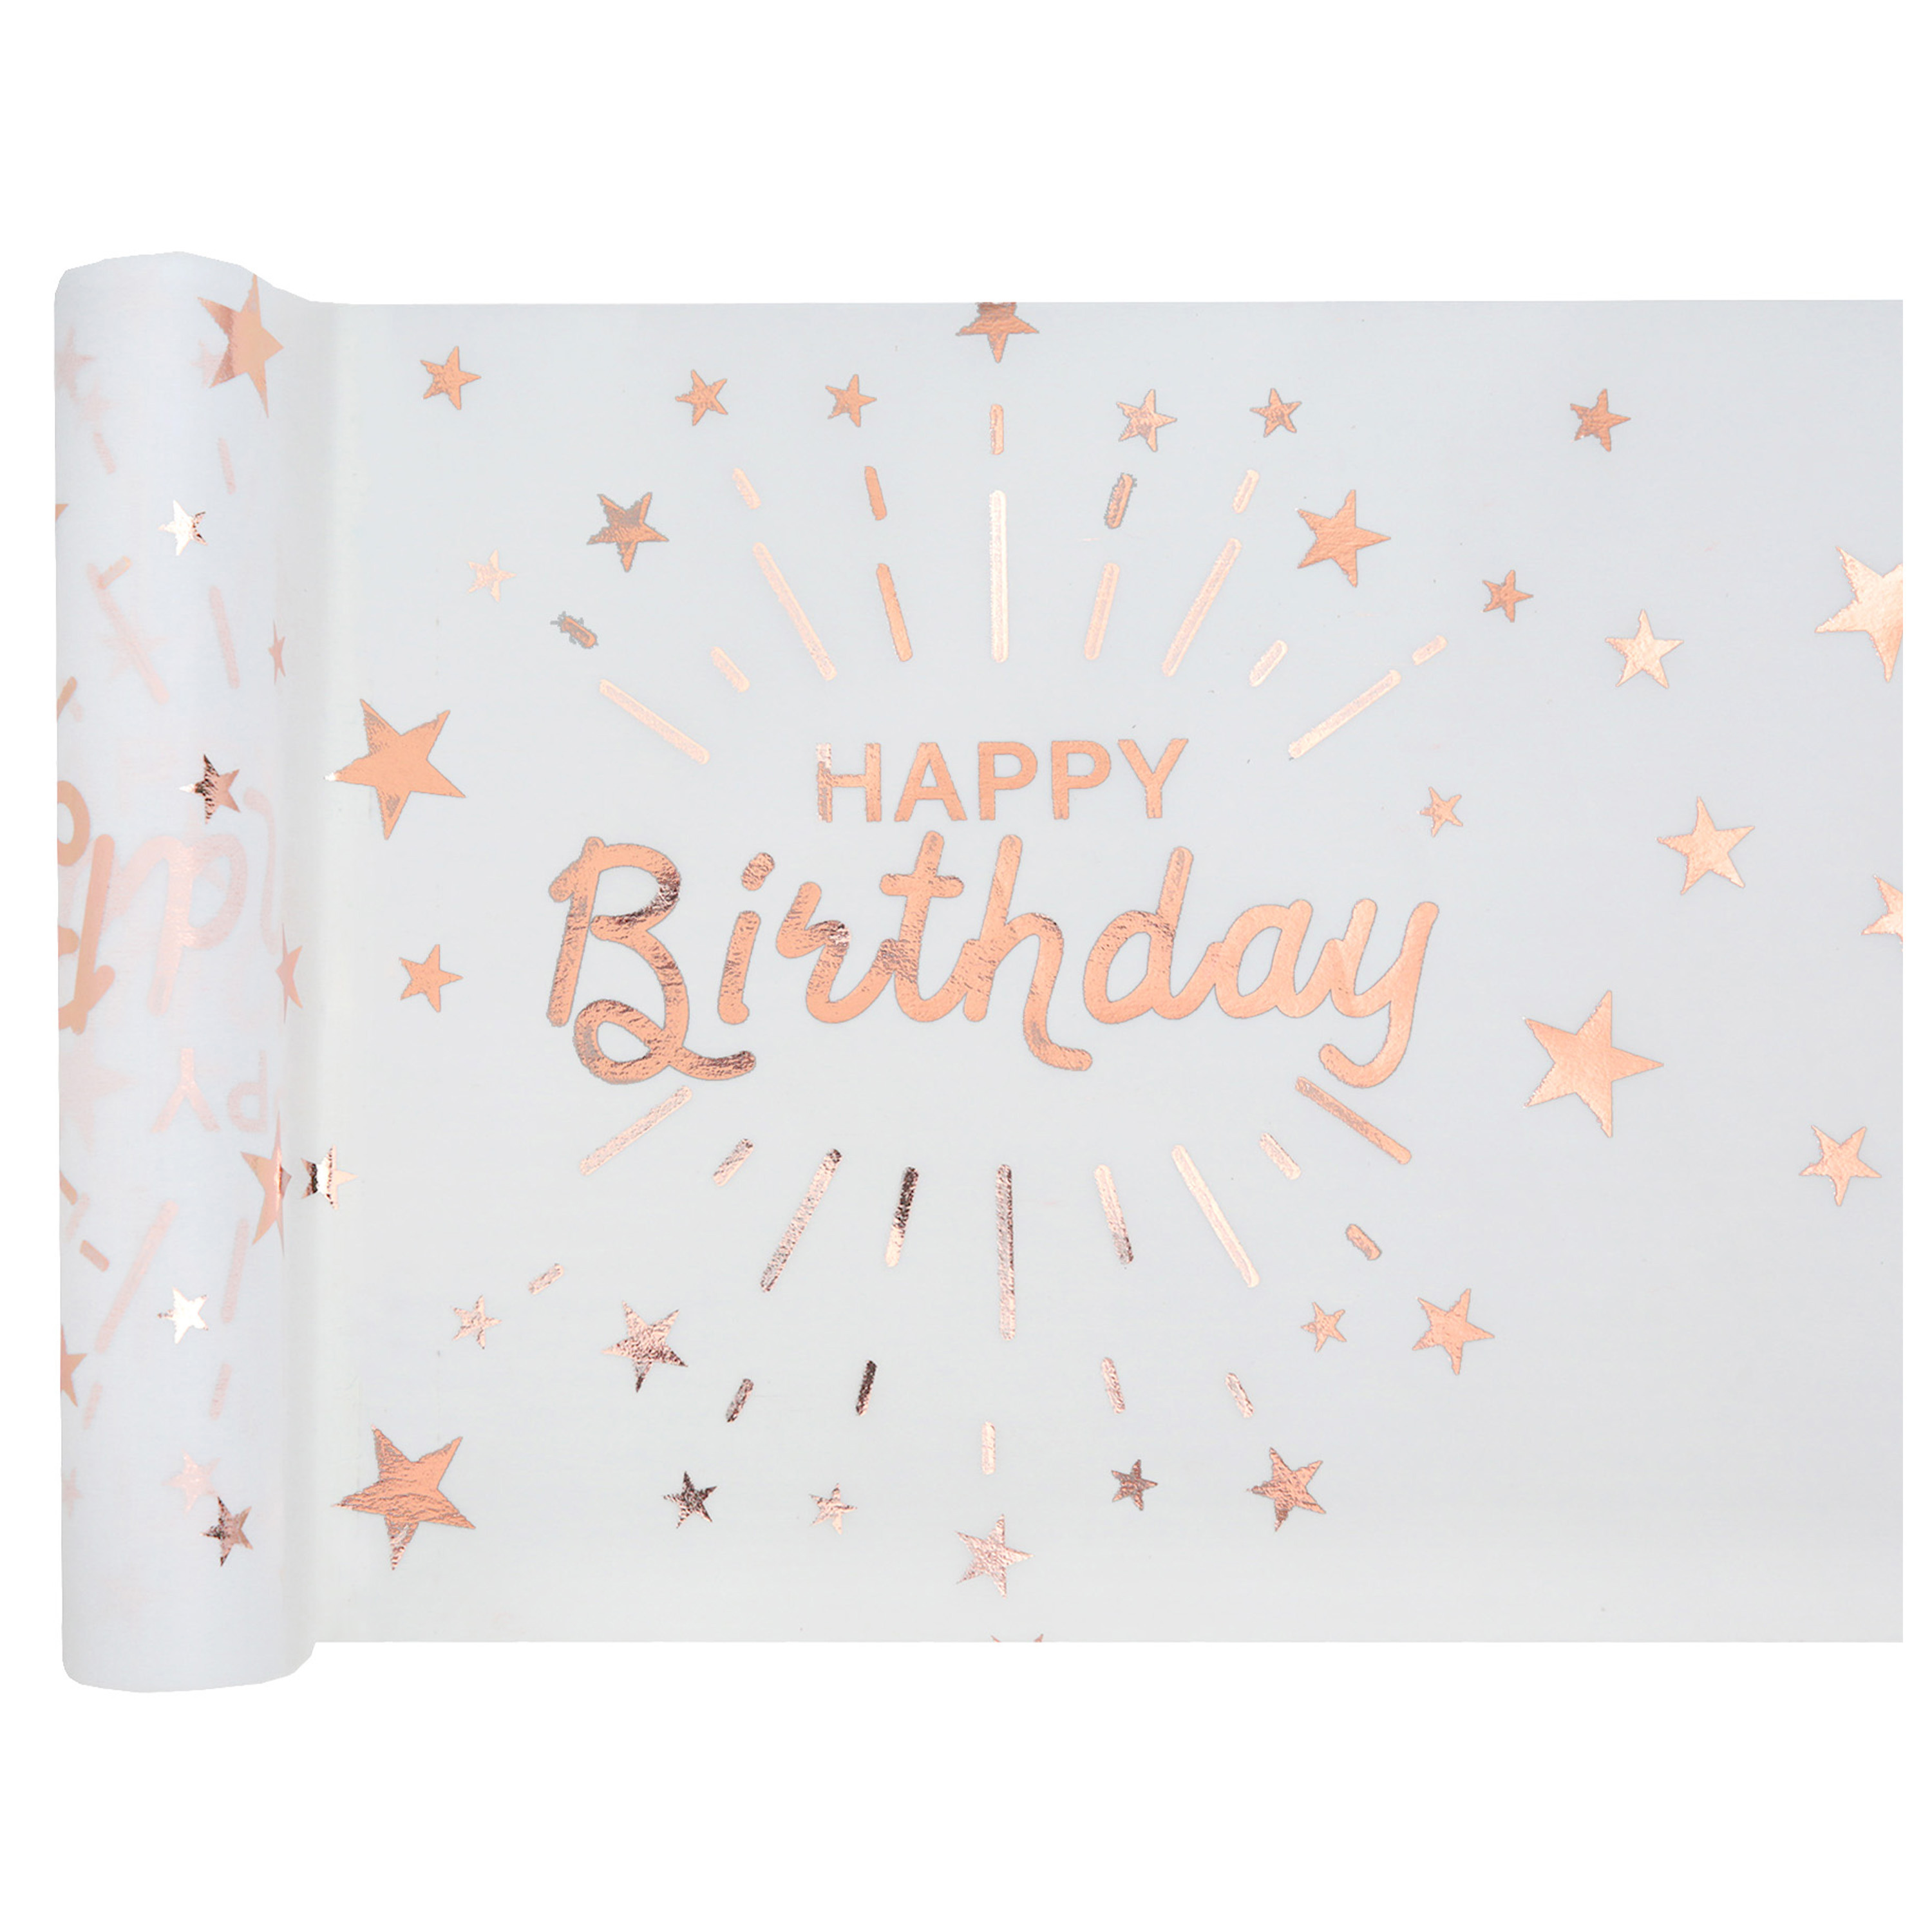 Santex Tischläufer "Happy Birthday" in weiß-roségold aus Polyester, 5m x 30cm